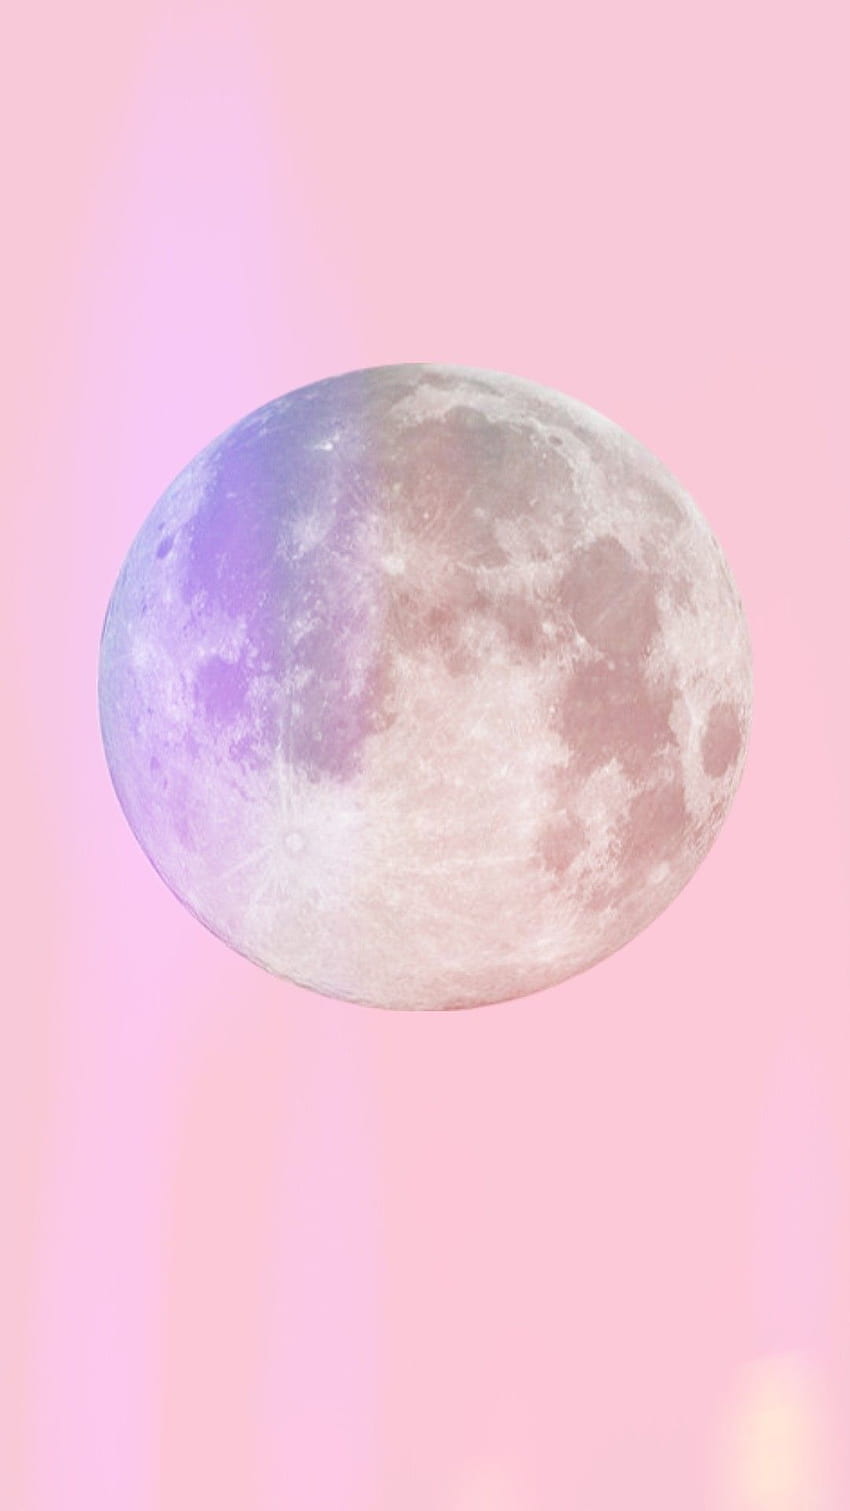 Pink Moon Images  Free Download on Freepik